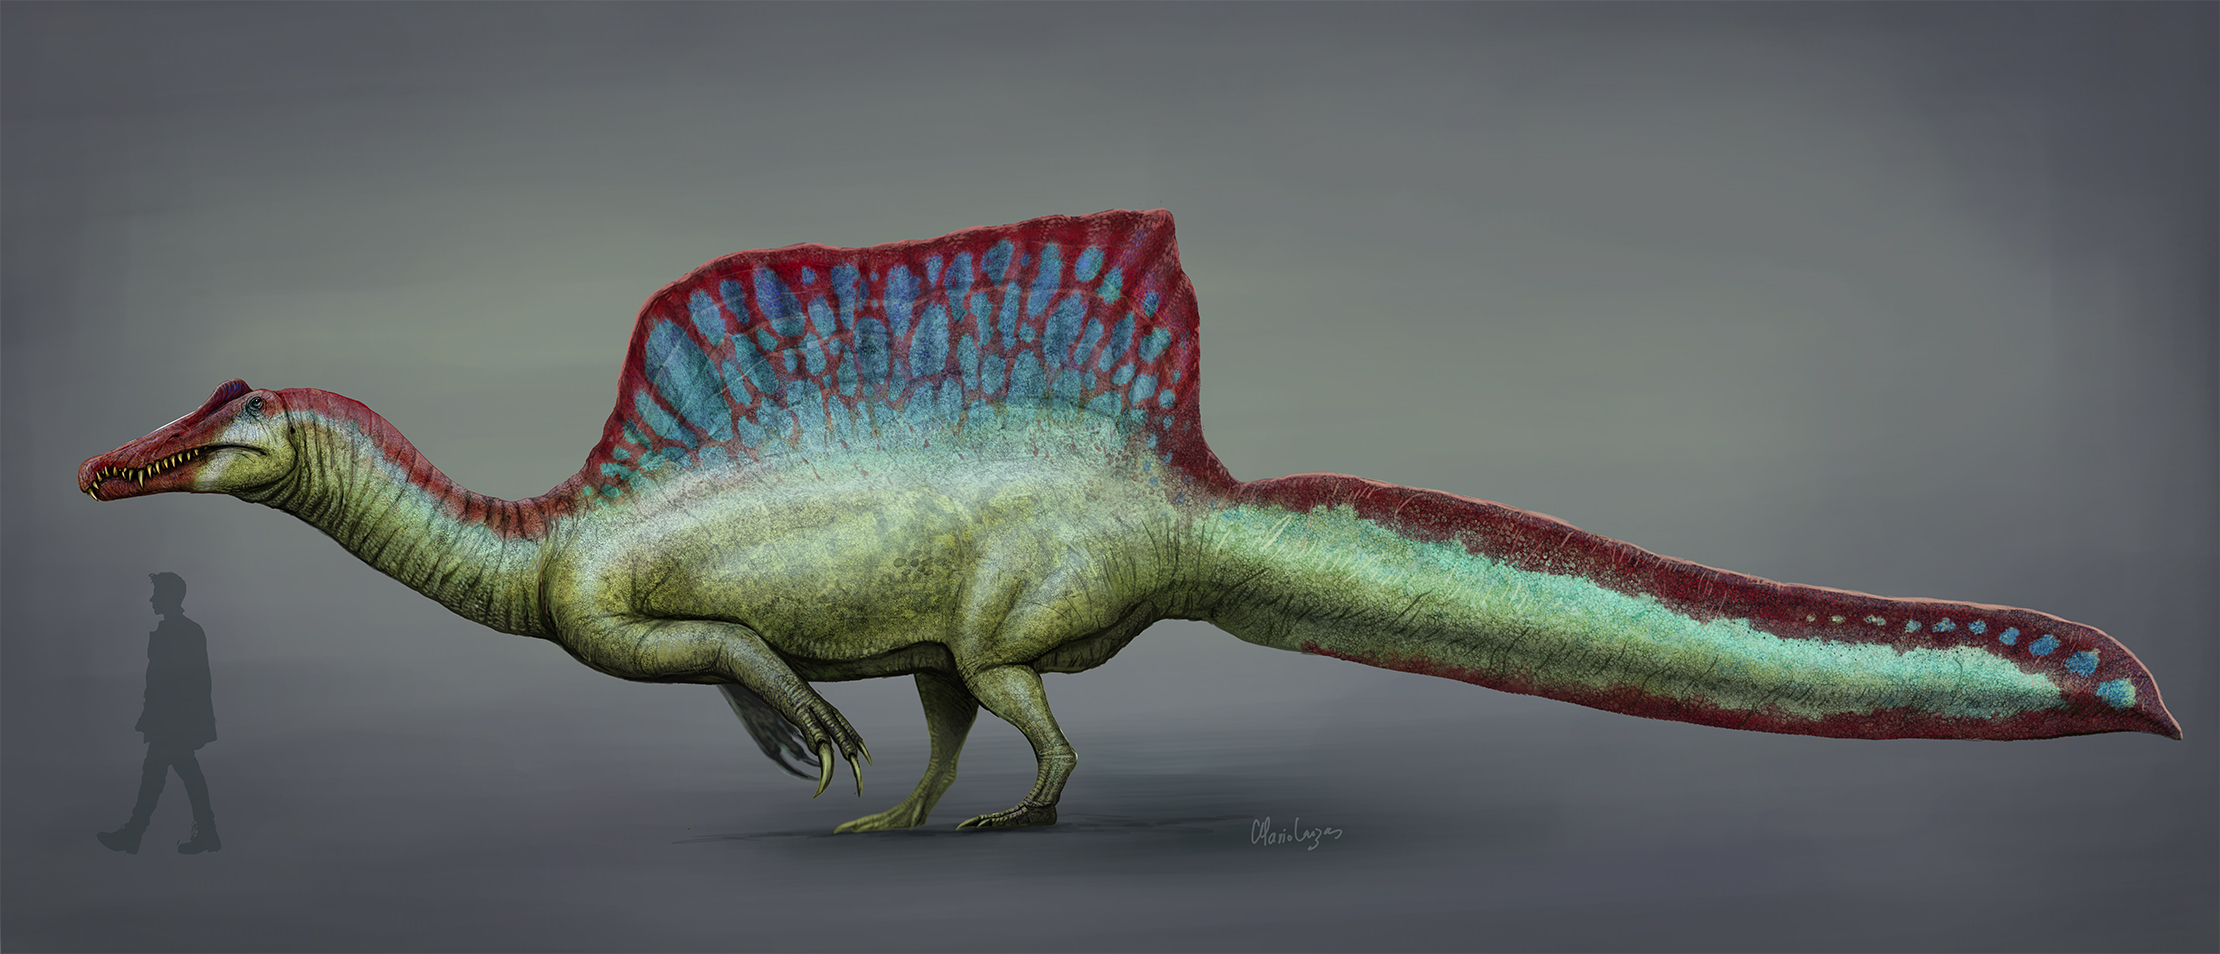 Spinosaurus_2020_reconstruction.jpg